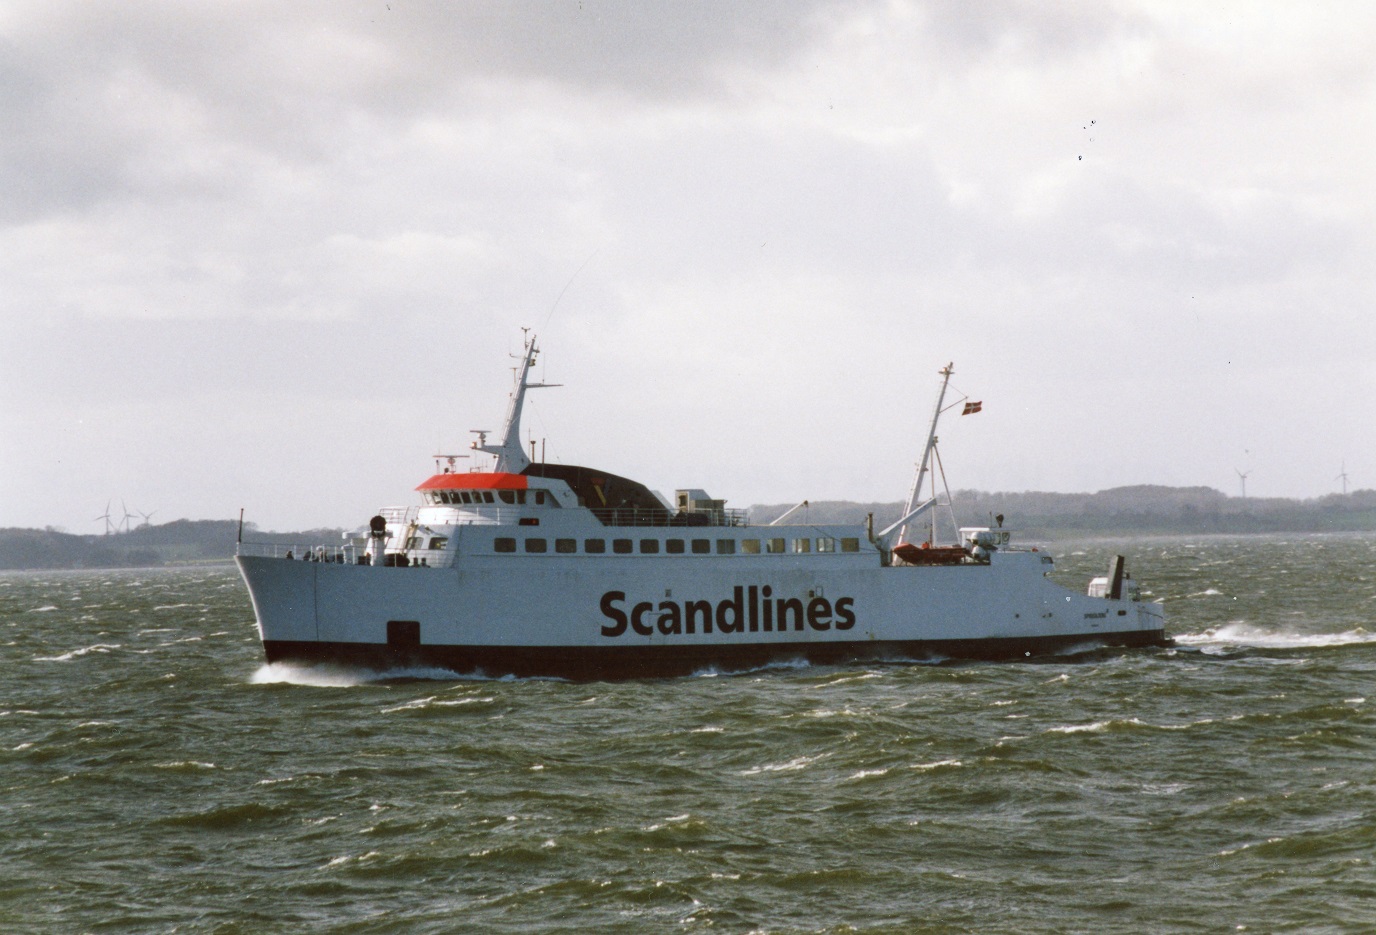 Scandlines Sydfyenskes færge ”SPODSBJERG” på vej mellem Spodsbjerg og Taars i marts 2007 ikke sålang tid, før færgen blev ommalet i nye farver efter, at Clipper Group har overtaget Scandlines Sydfyenske. ”SPODSBJERG” var bygget i Husum i 1972 som ”ÆRØ-PILEN”, købt af Sydfyenske i 1974 og omdøbt til ”SPODSBJERG”. Forlænget i 1976 og ophugget i 2012. Foto: Jan-Christer Lund